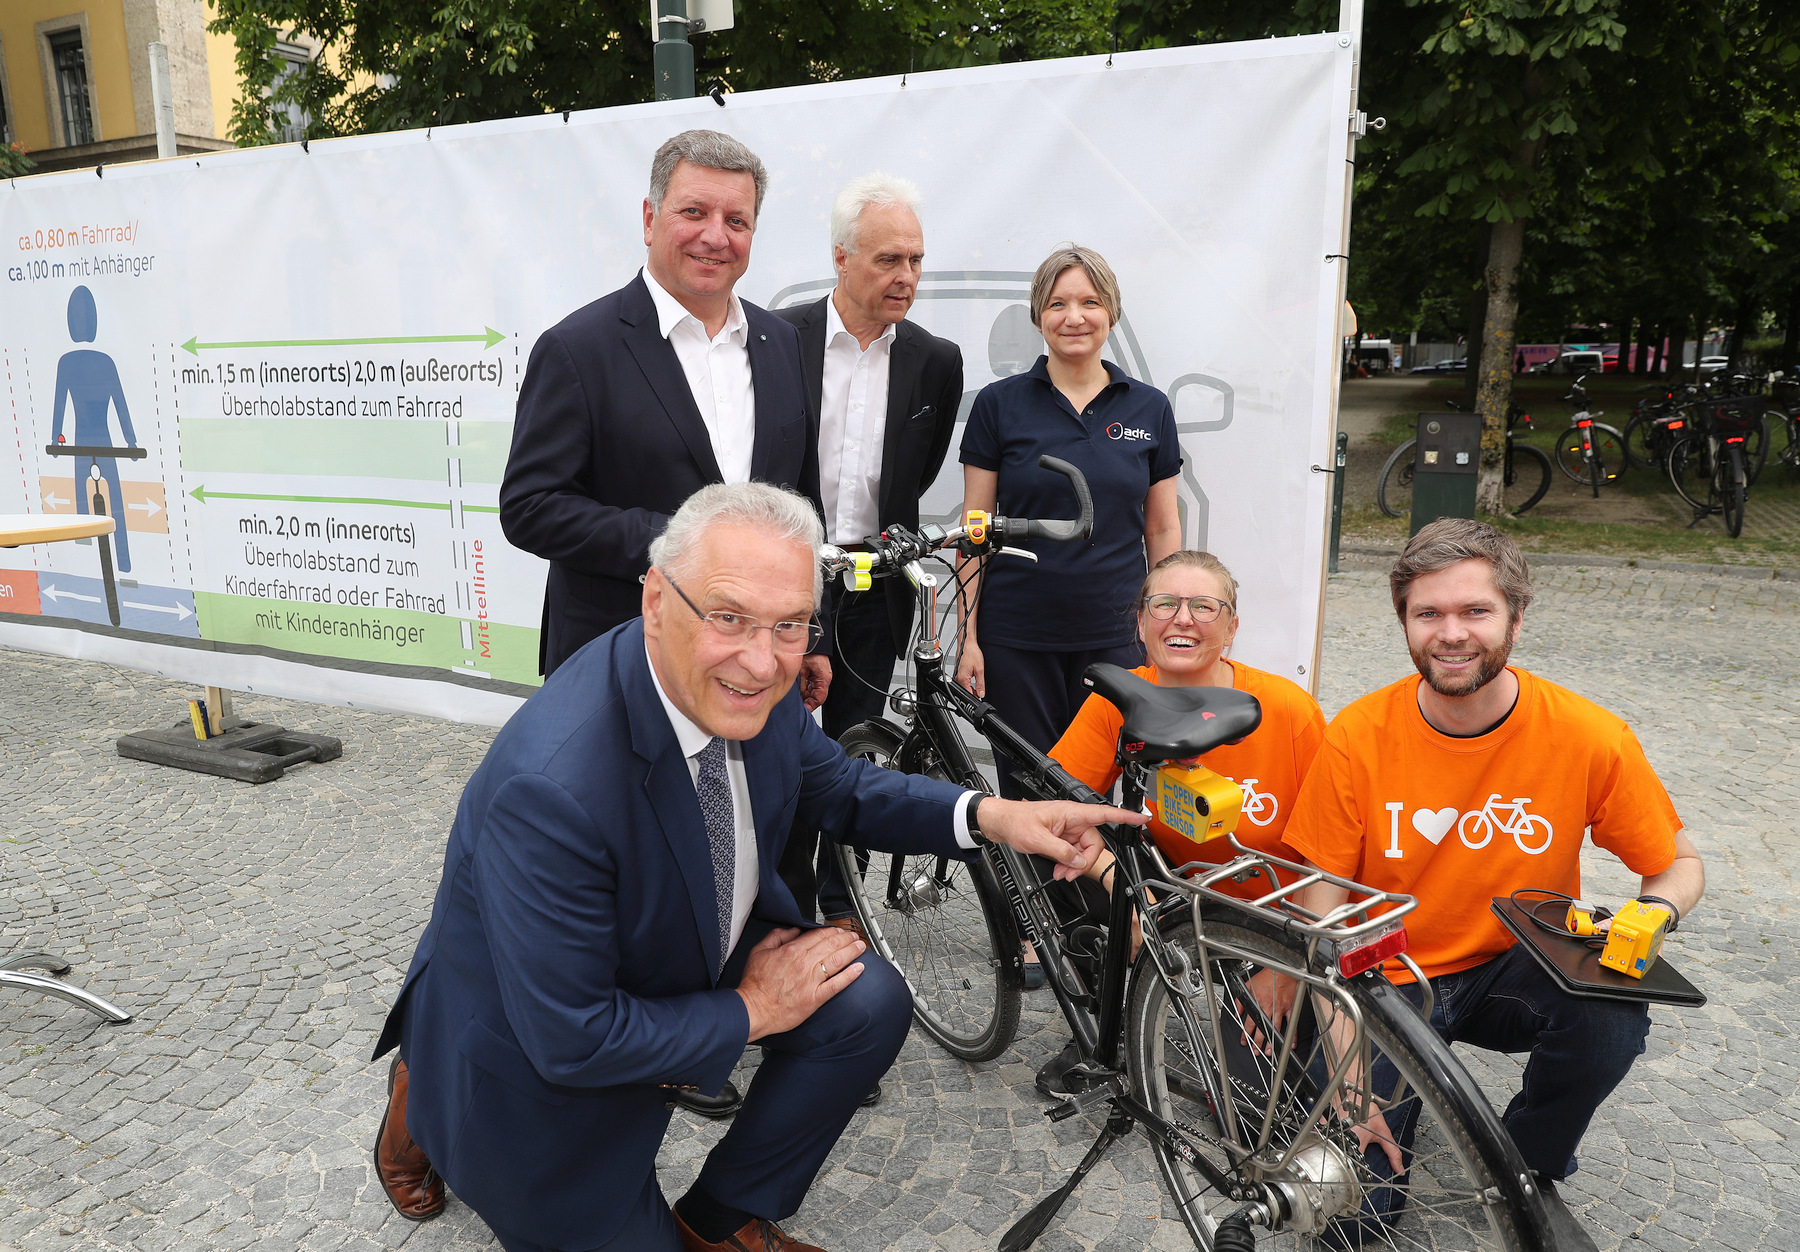 Innenminister Joachim Herrmann, Verkehrsminister Christian Bernreiter, ADFC und ADAC gemeinsam für mehr Sicherheit beim Radfahren